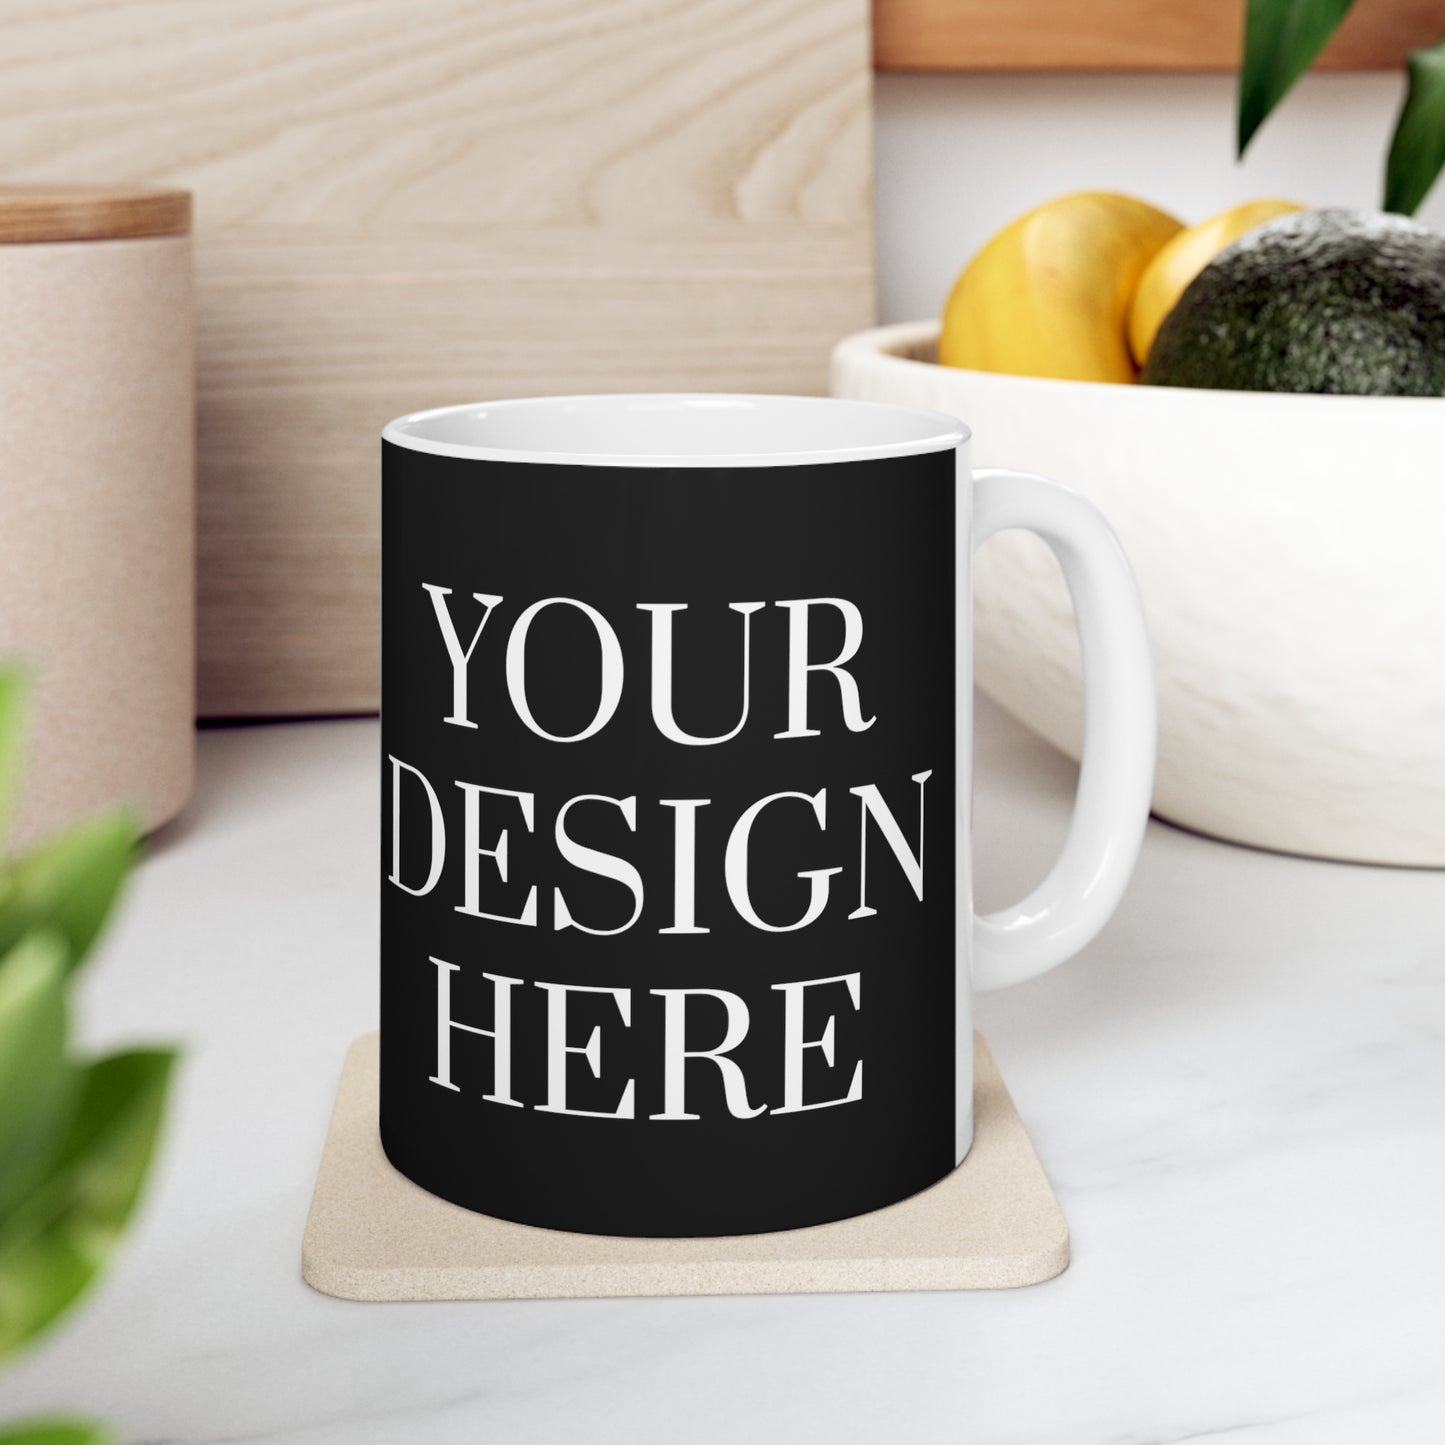 Mug en céramique 11 oz - Personnalisé - Votre design ici - 10